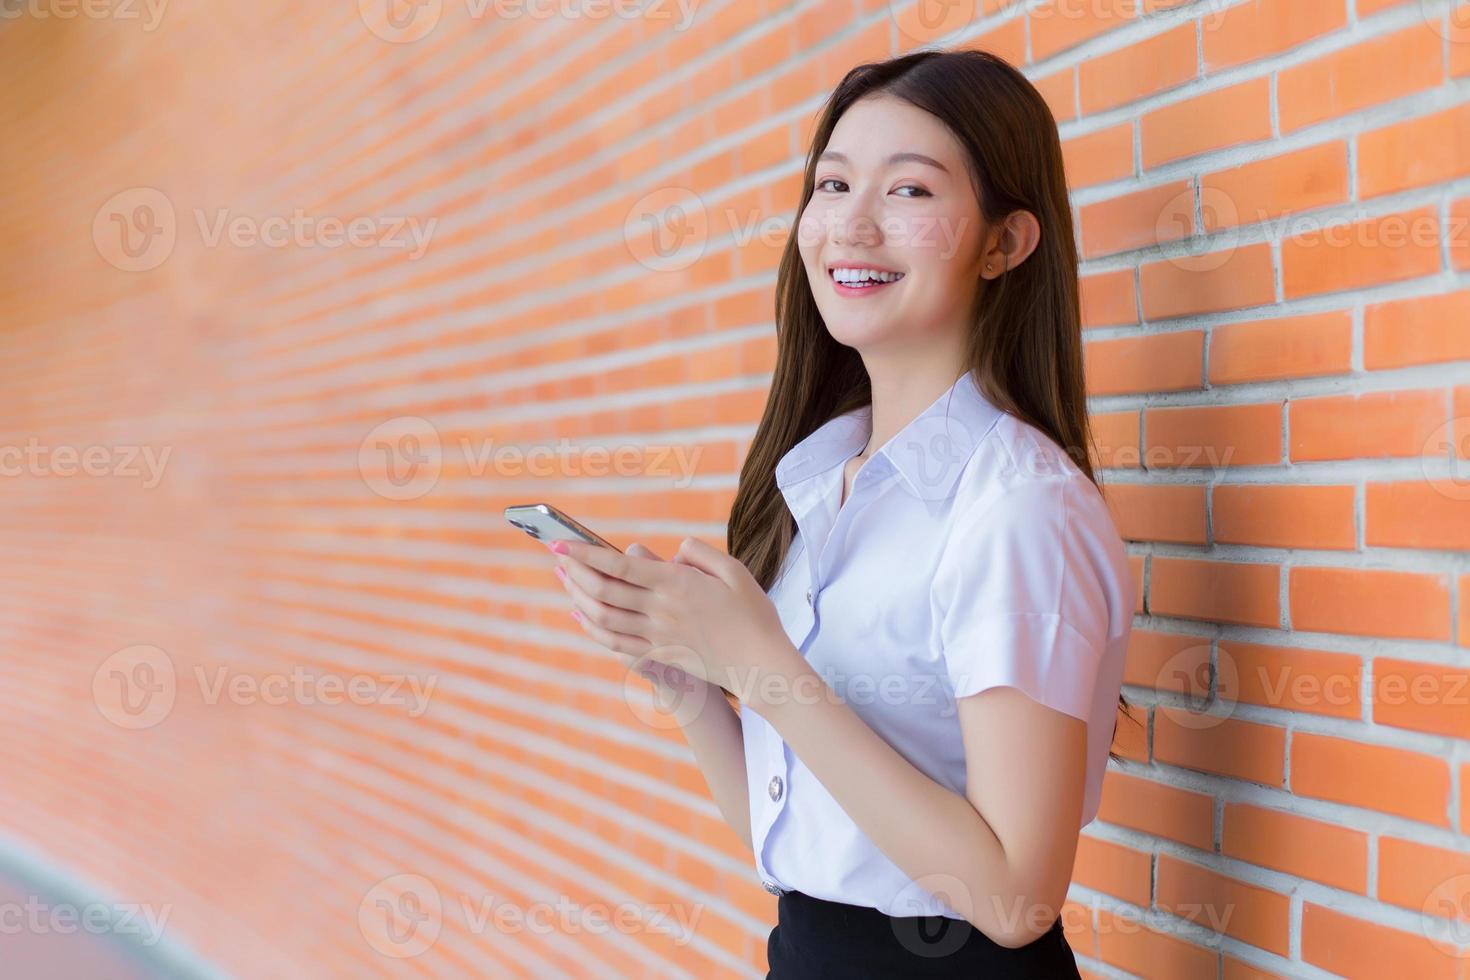 retrato de uma estudante tailandesa asiática de uniforme está sorrindo alegremente enquanto usa um smartphone na universidade com paredes de tijolos como pano de fundo. foto